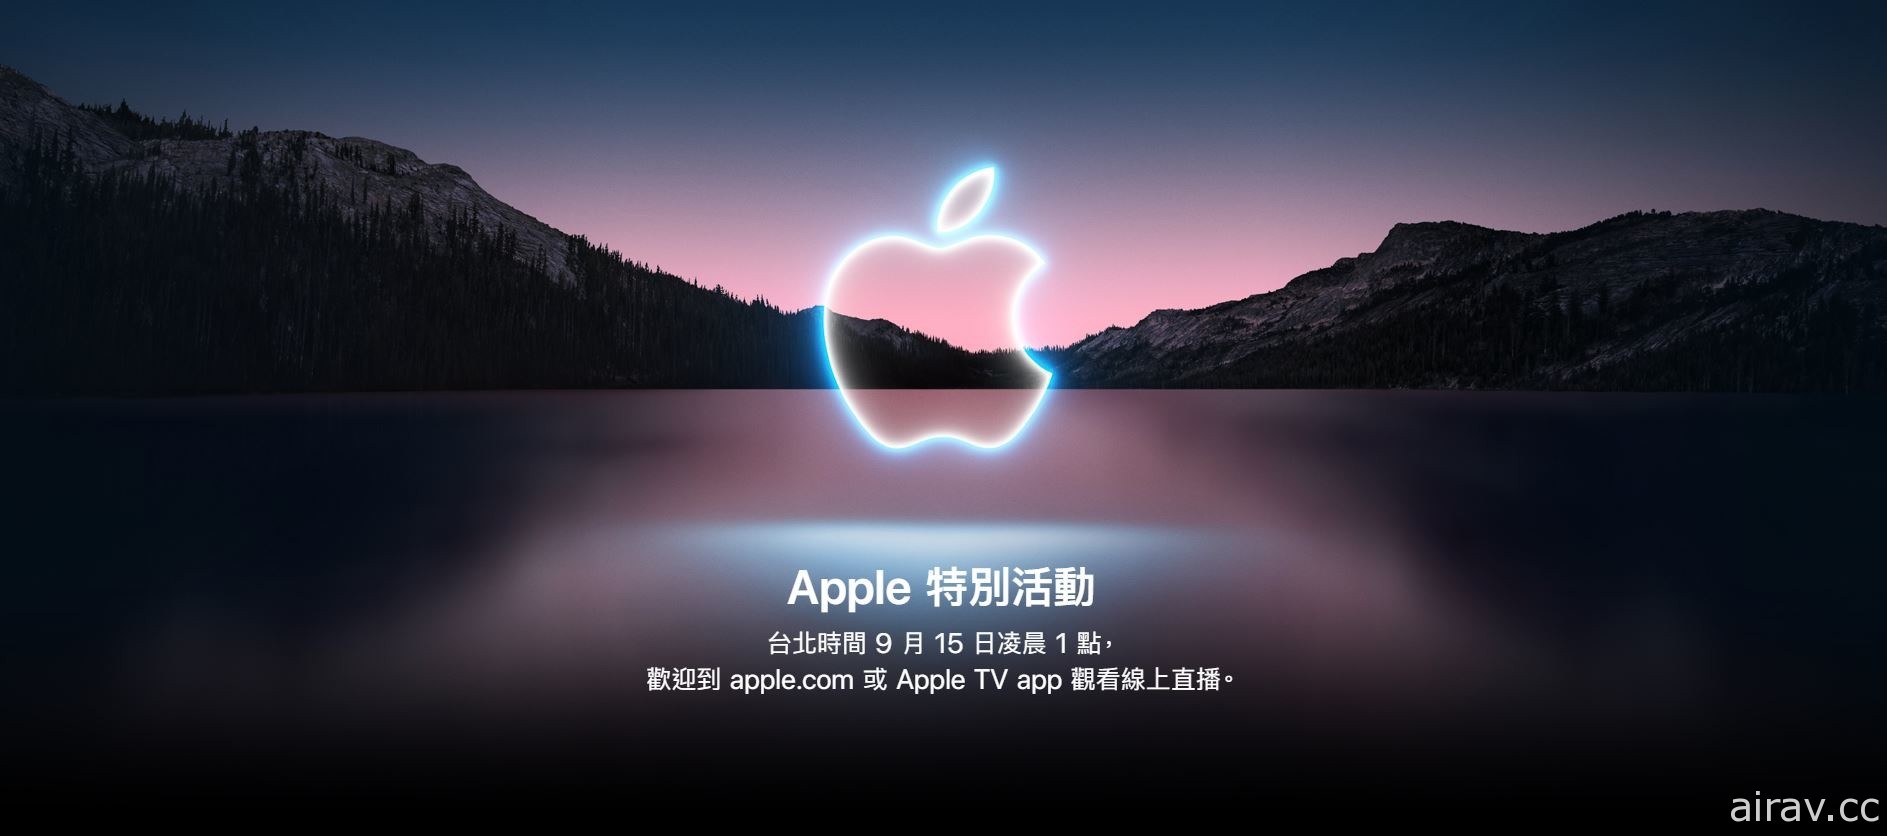 苹果 2021 年秋季发表会将于台湾时间 15 日凌晨登场 预计揭露新产品资讯